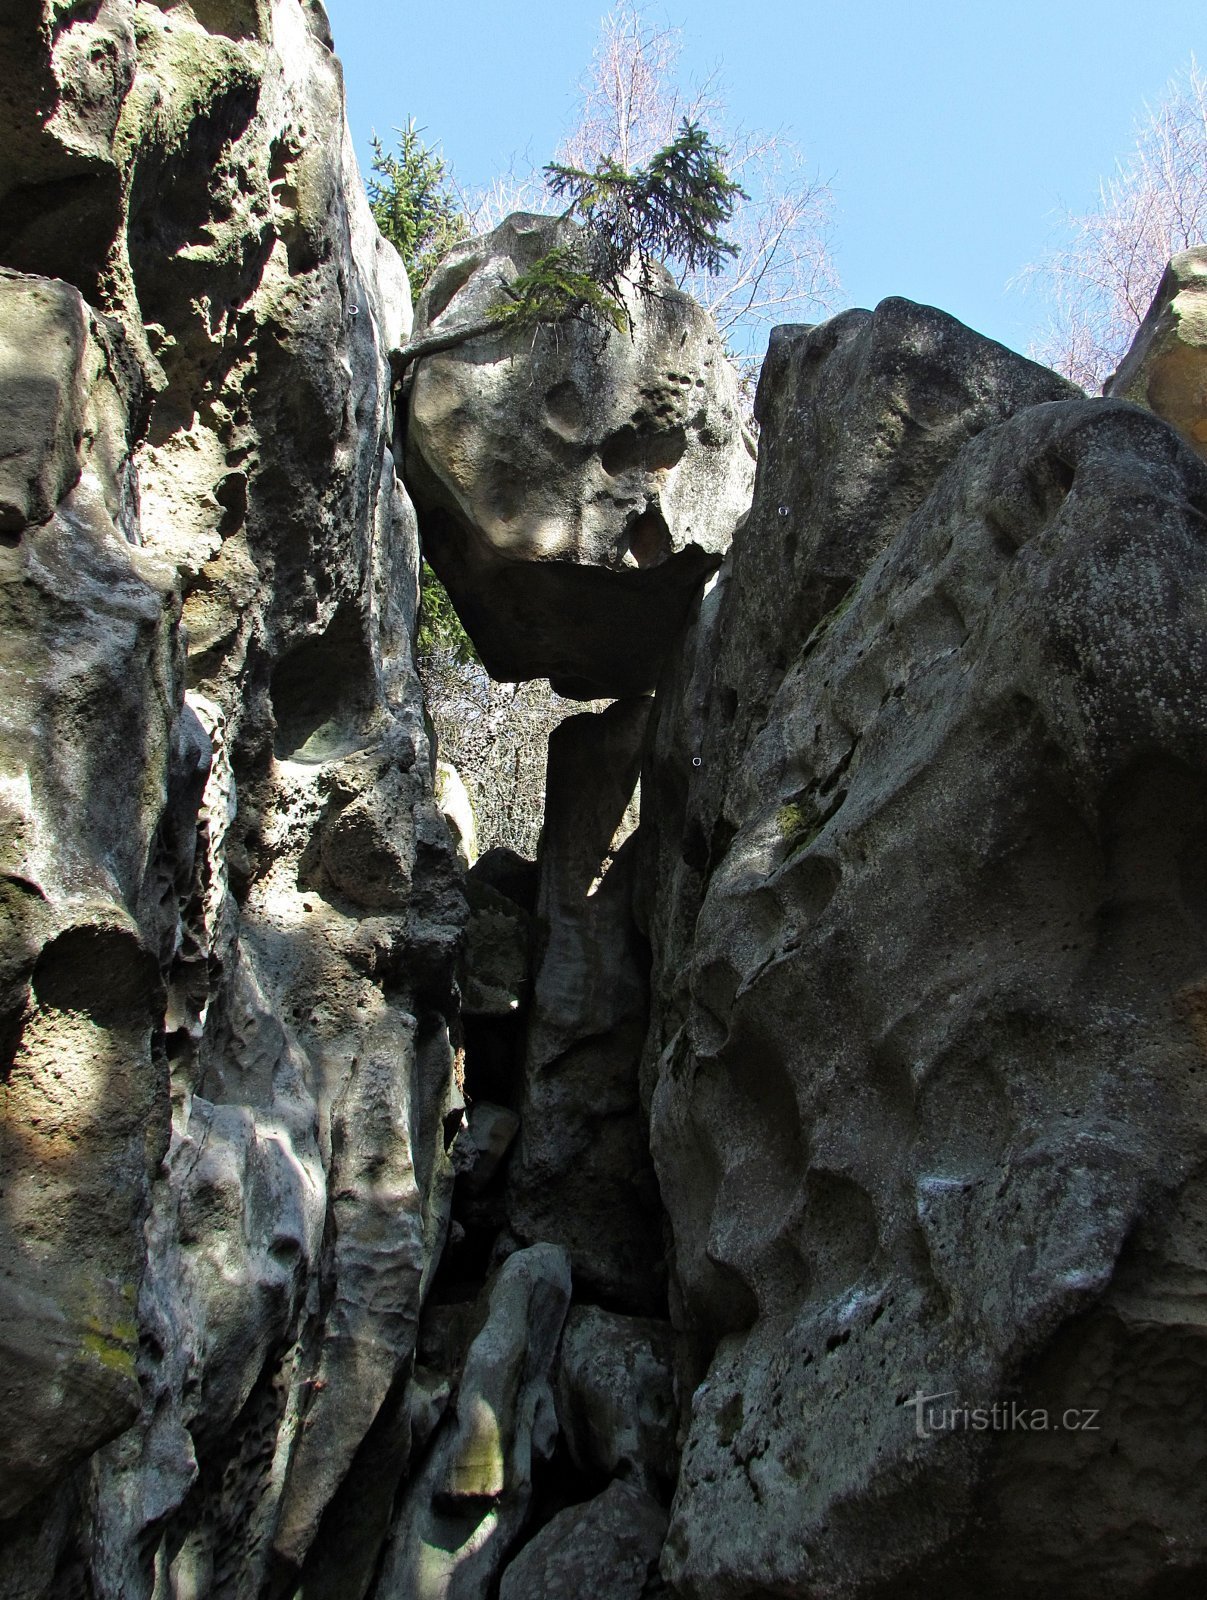 Διπλή σπανιότητα των βράχων Lačnovské